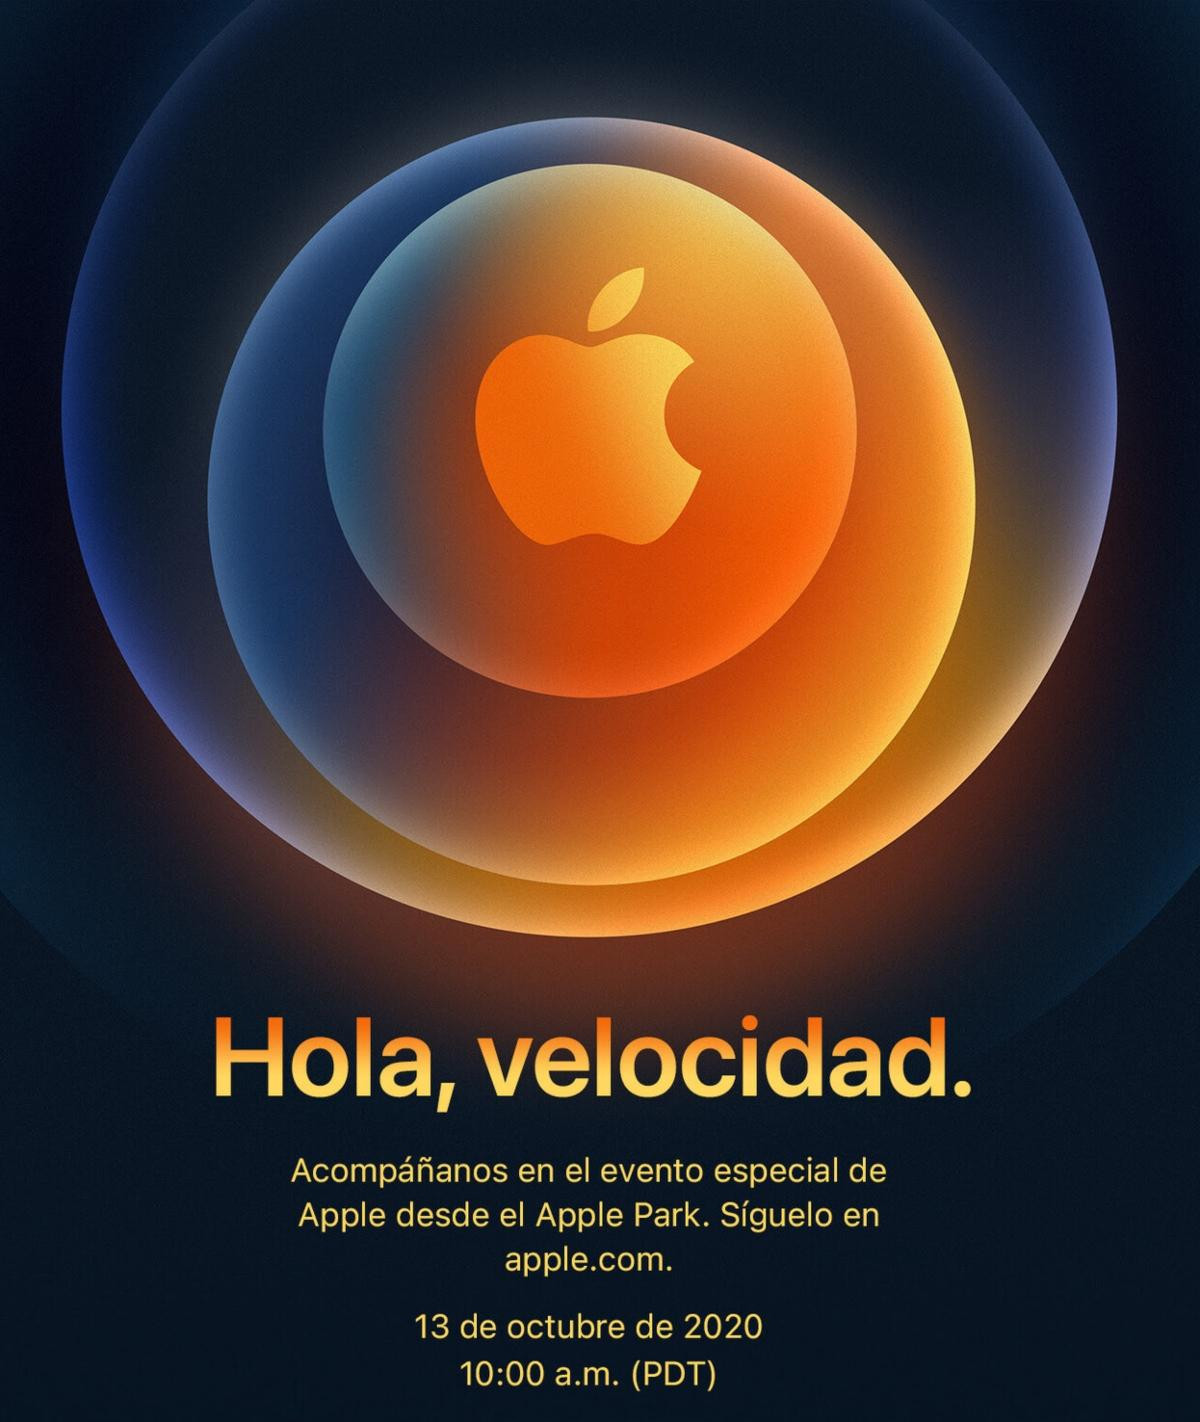 La invitación de Apple a su evento del 13 de octubre de 2020